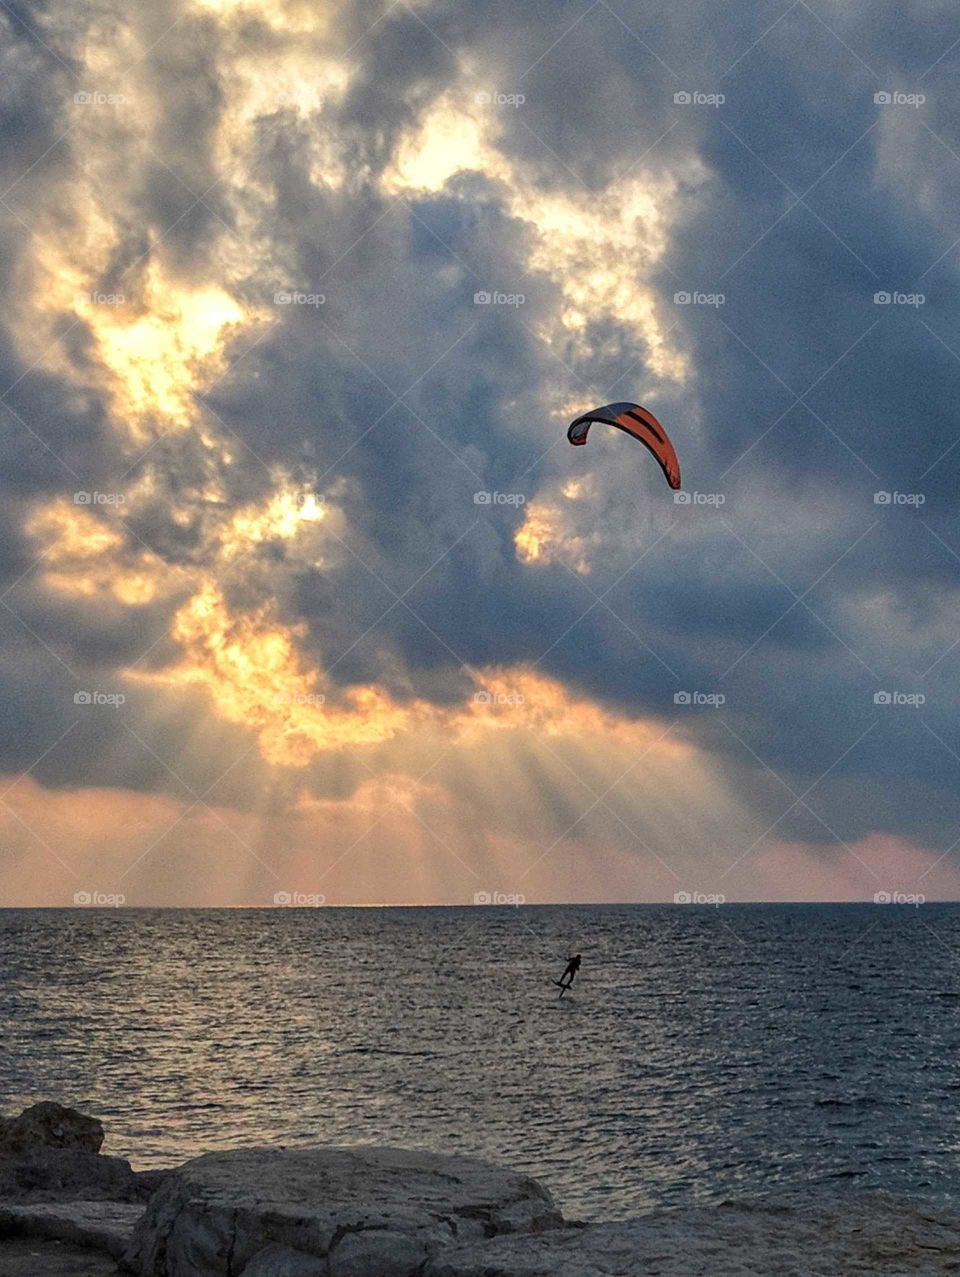 kitesurf recreational activity at sunset